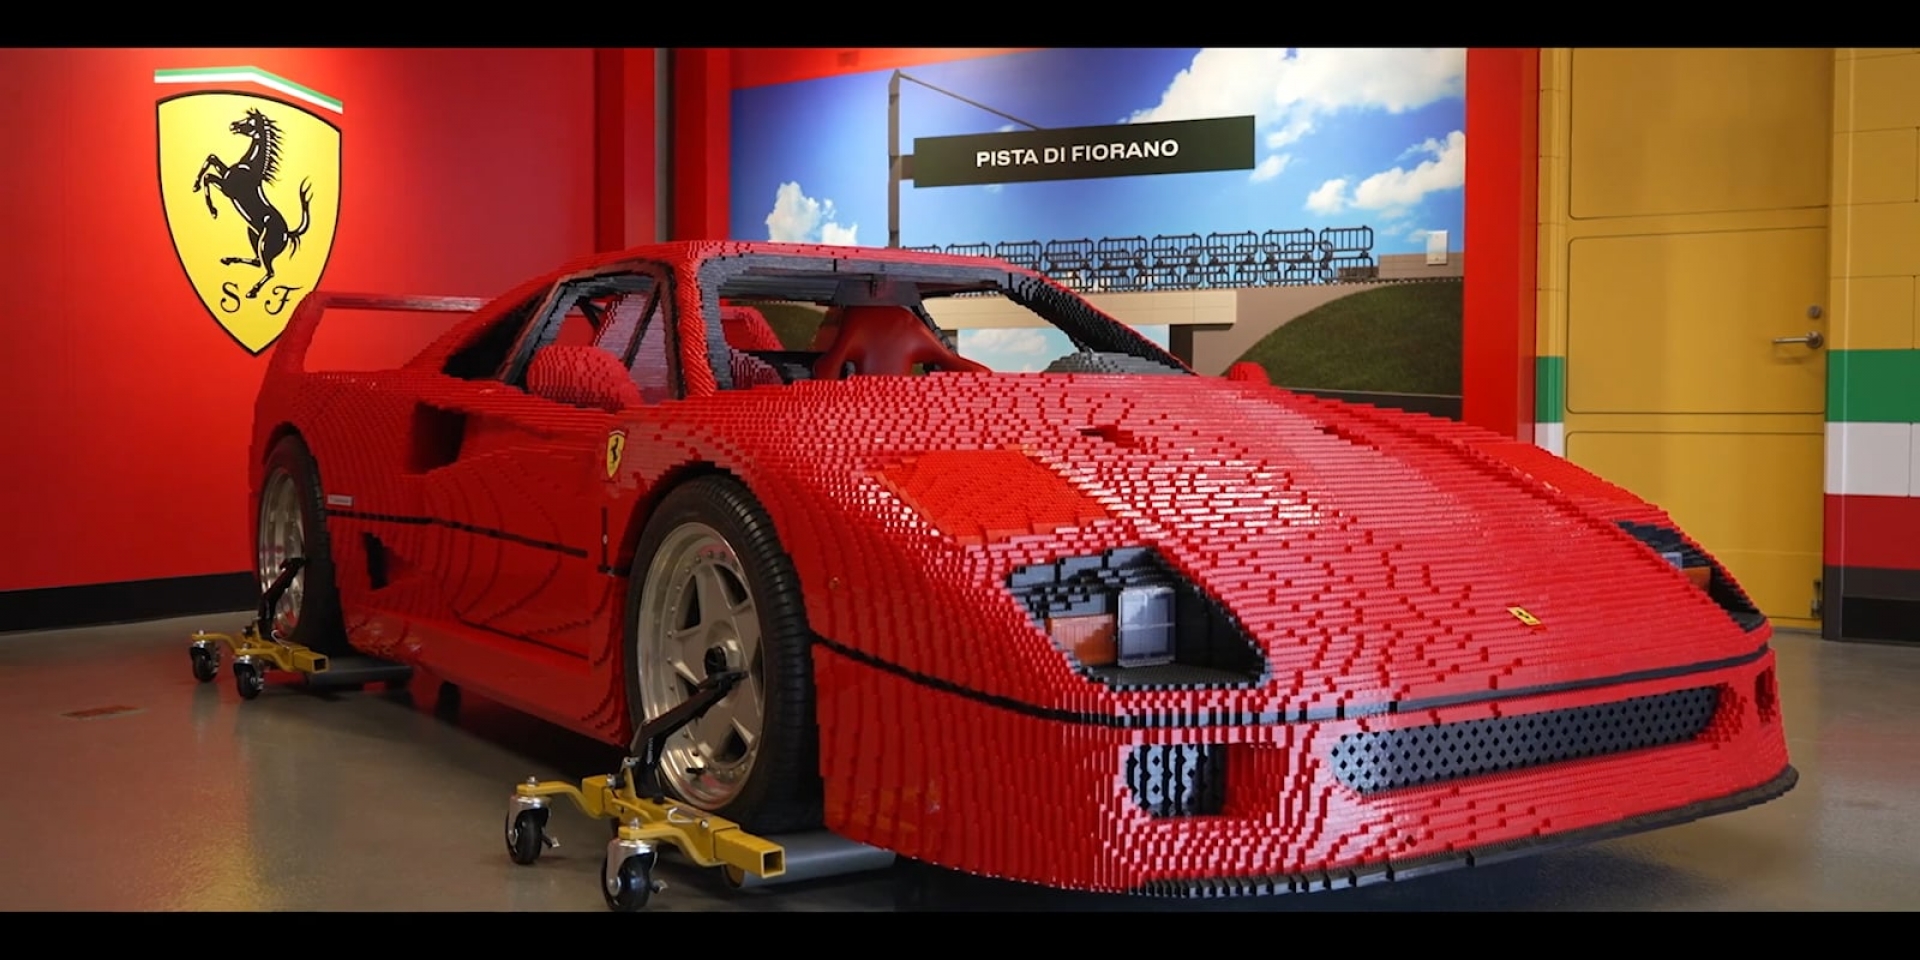 重現Ferrari F40經典樣貌 樂高打造1:1模型